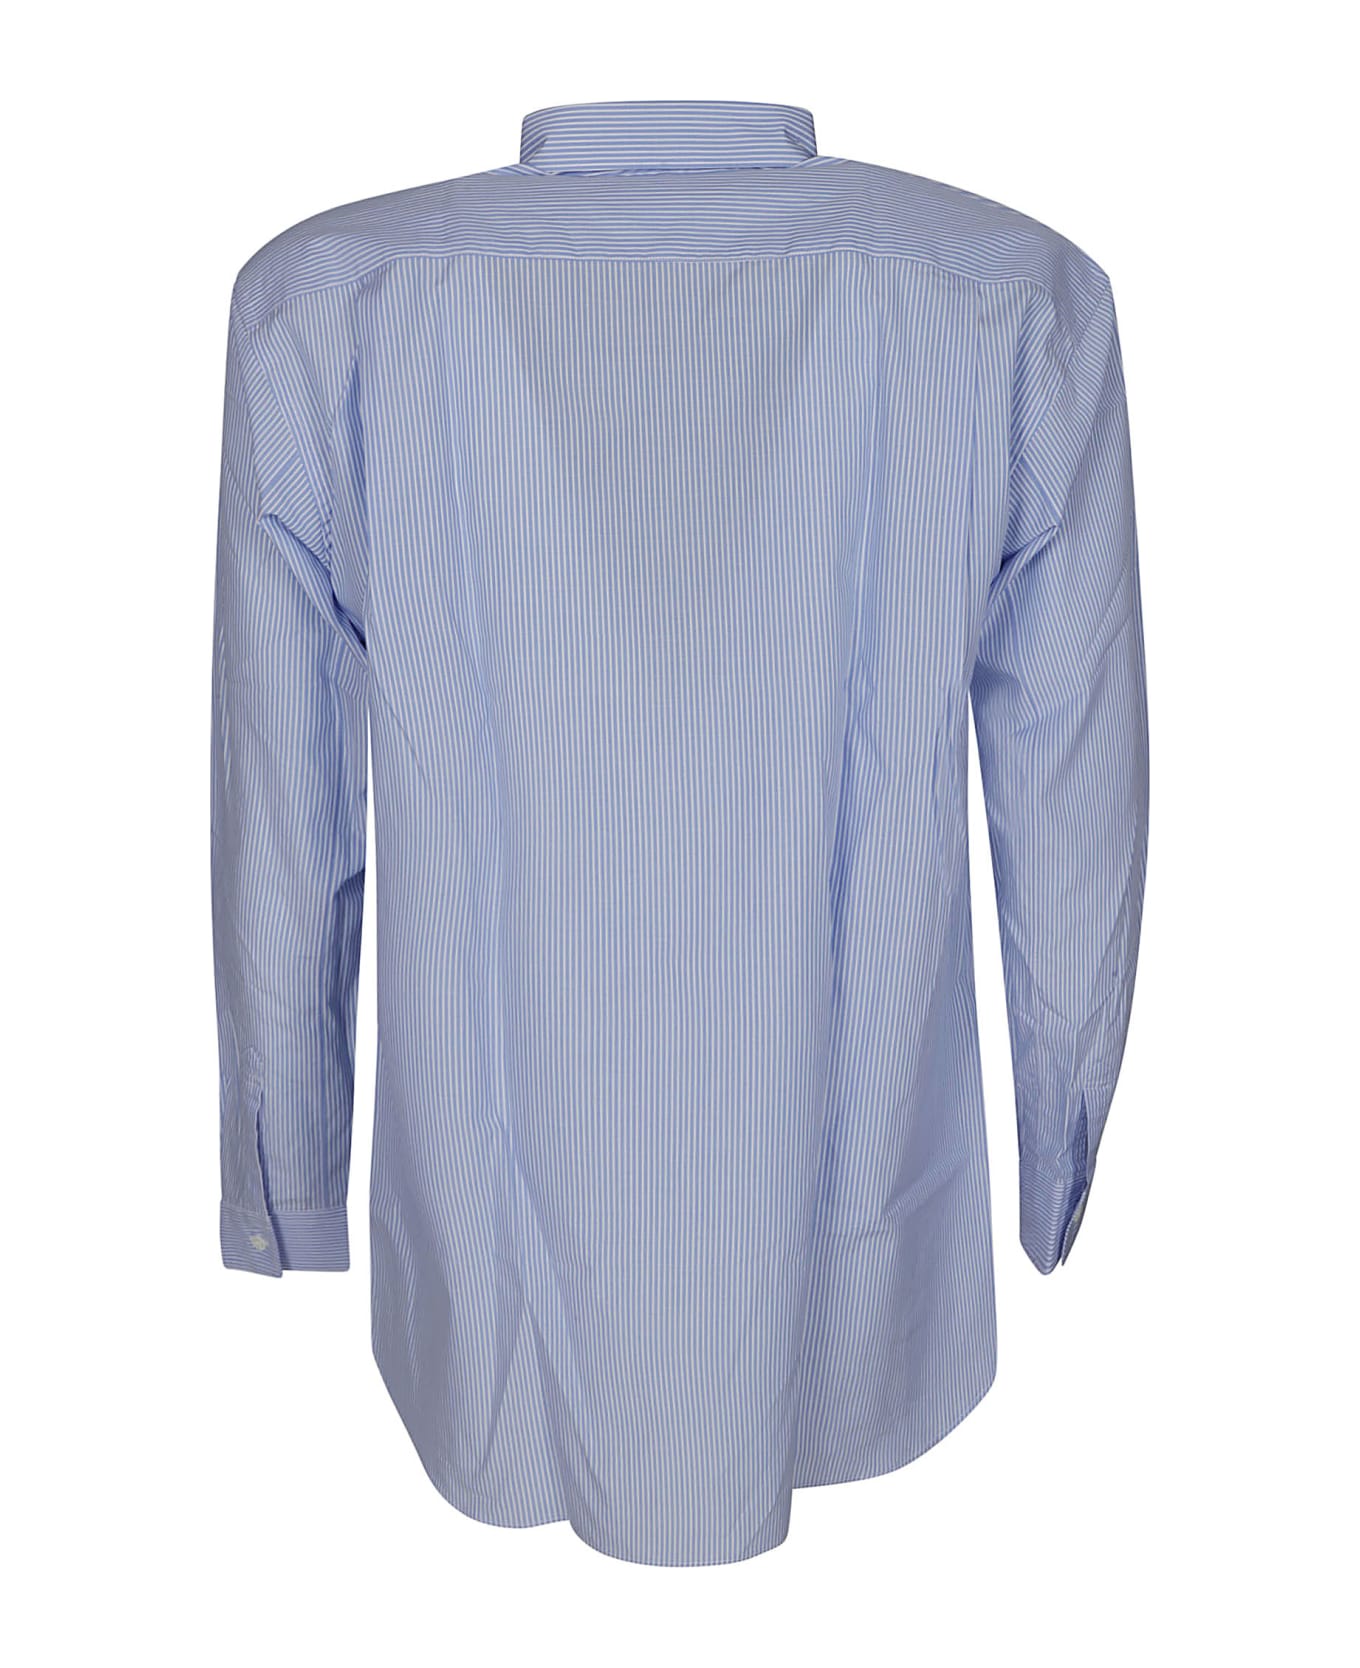 Comme des Garçons Shirt Round Hem Striped Shirt - LIGHT BLUE シャツ